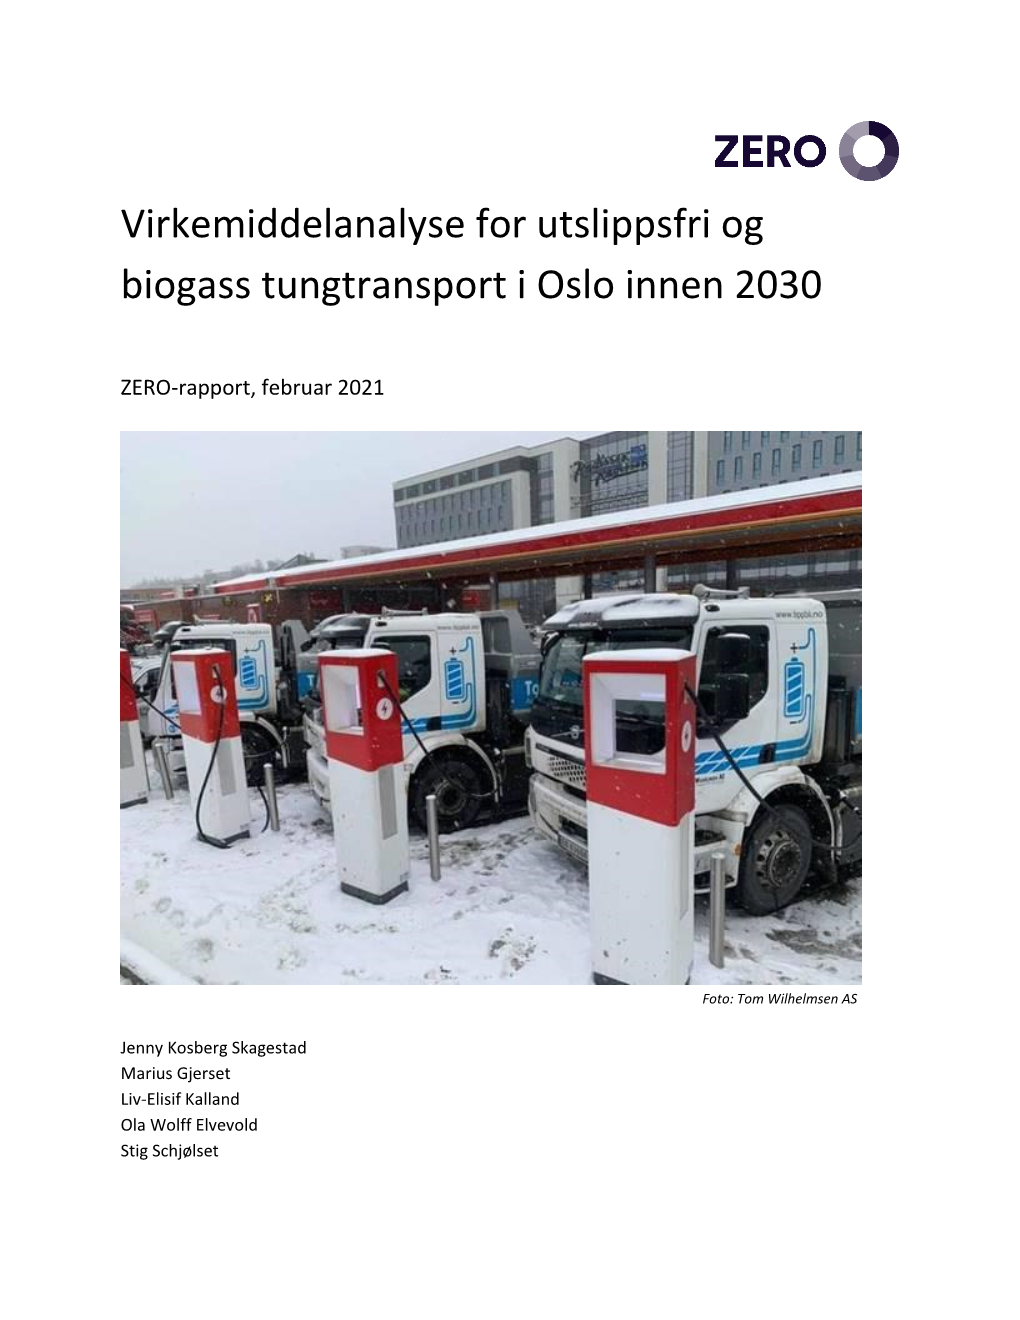 Virkemiddelanalyse for Utslippsfri Og Biogass Tungtransport I Oslo Innen 2030